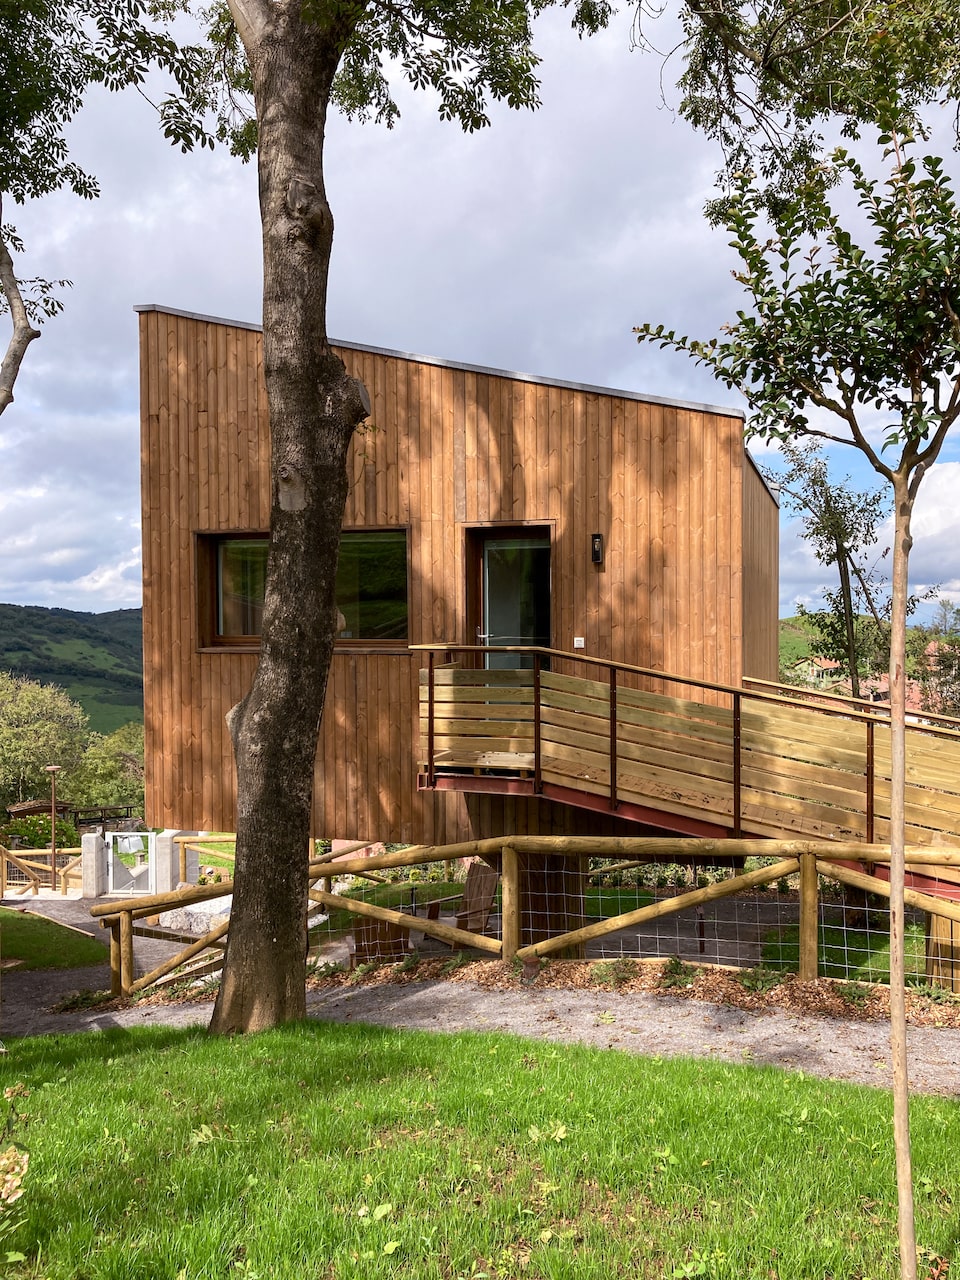 Apartotel en Linares Proaza Asturias proyecto Dolmen Arquitectos